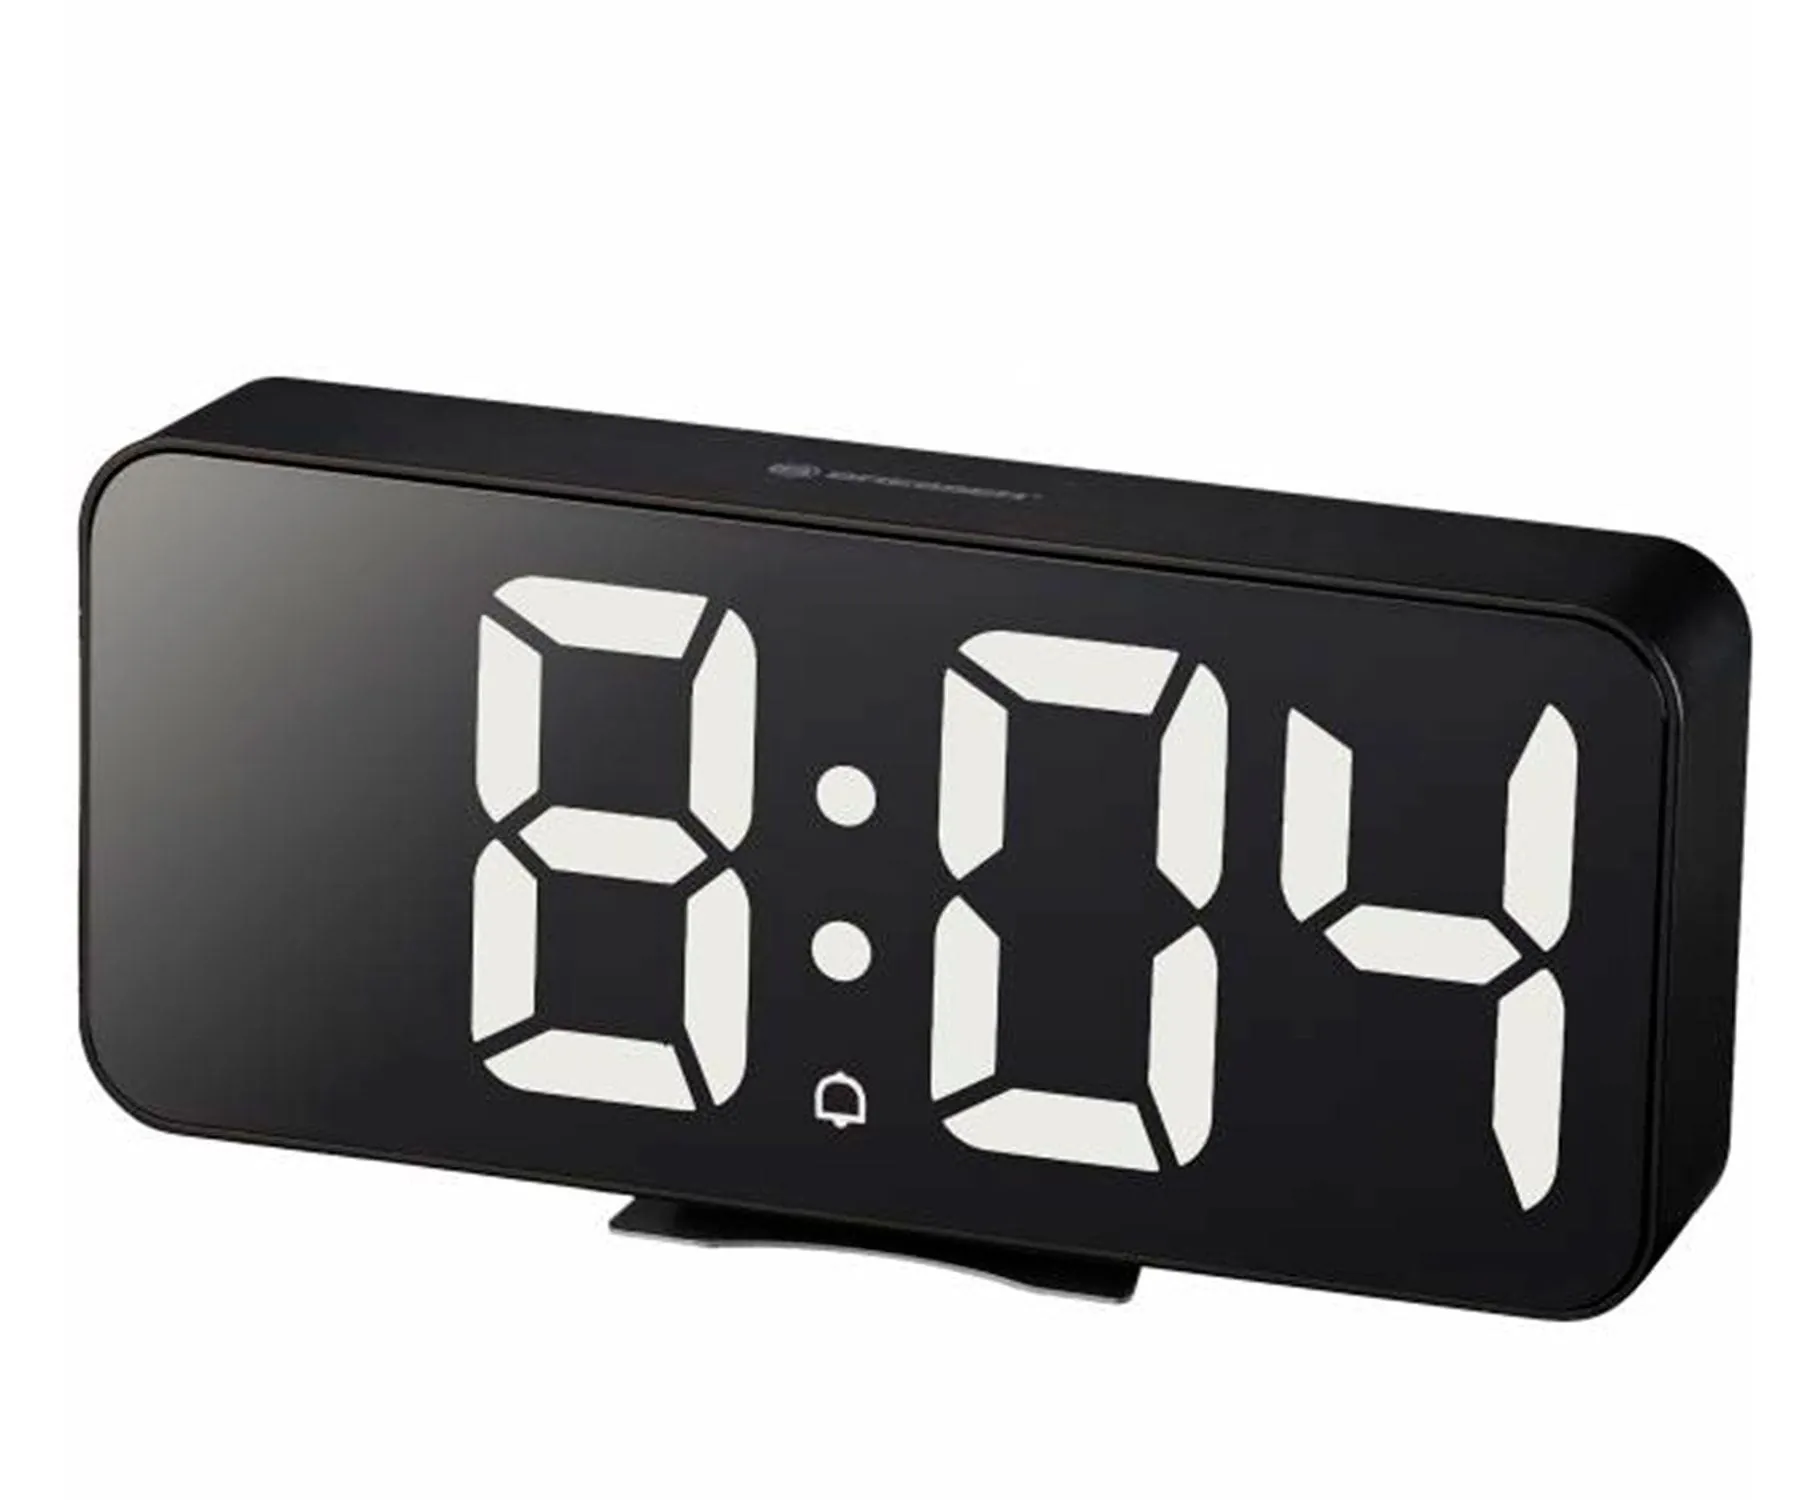 Bresser Mytime Echo FXL Negro / Reloj despertador / Termómetro